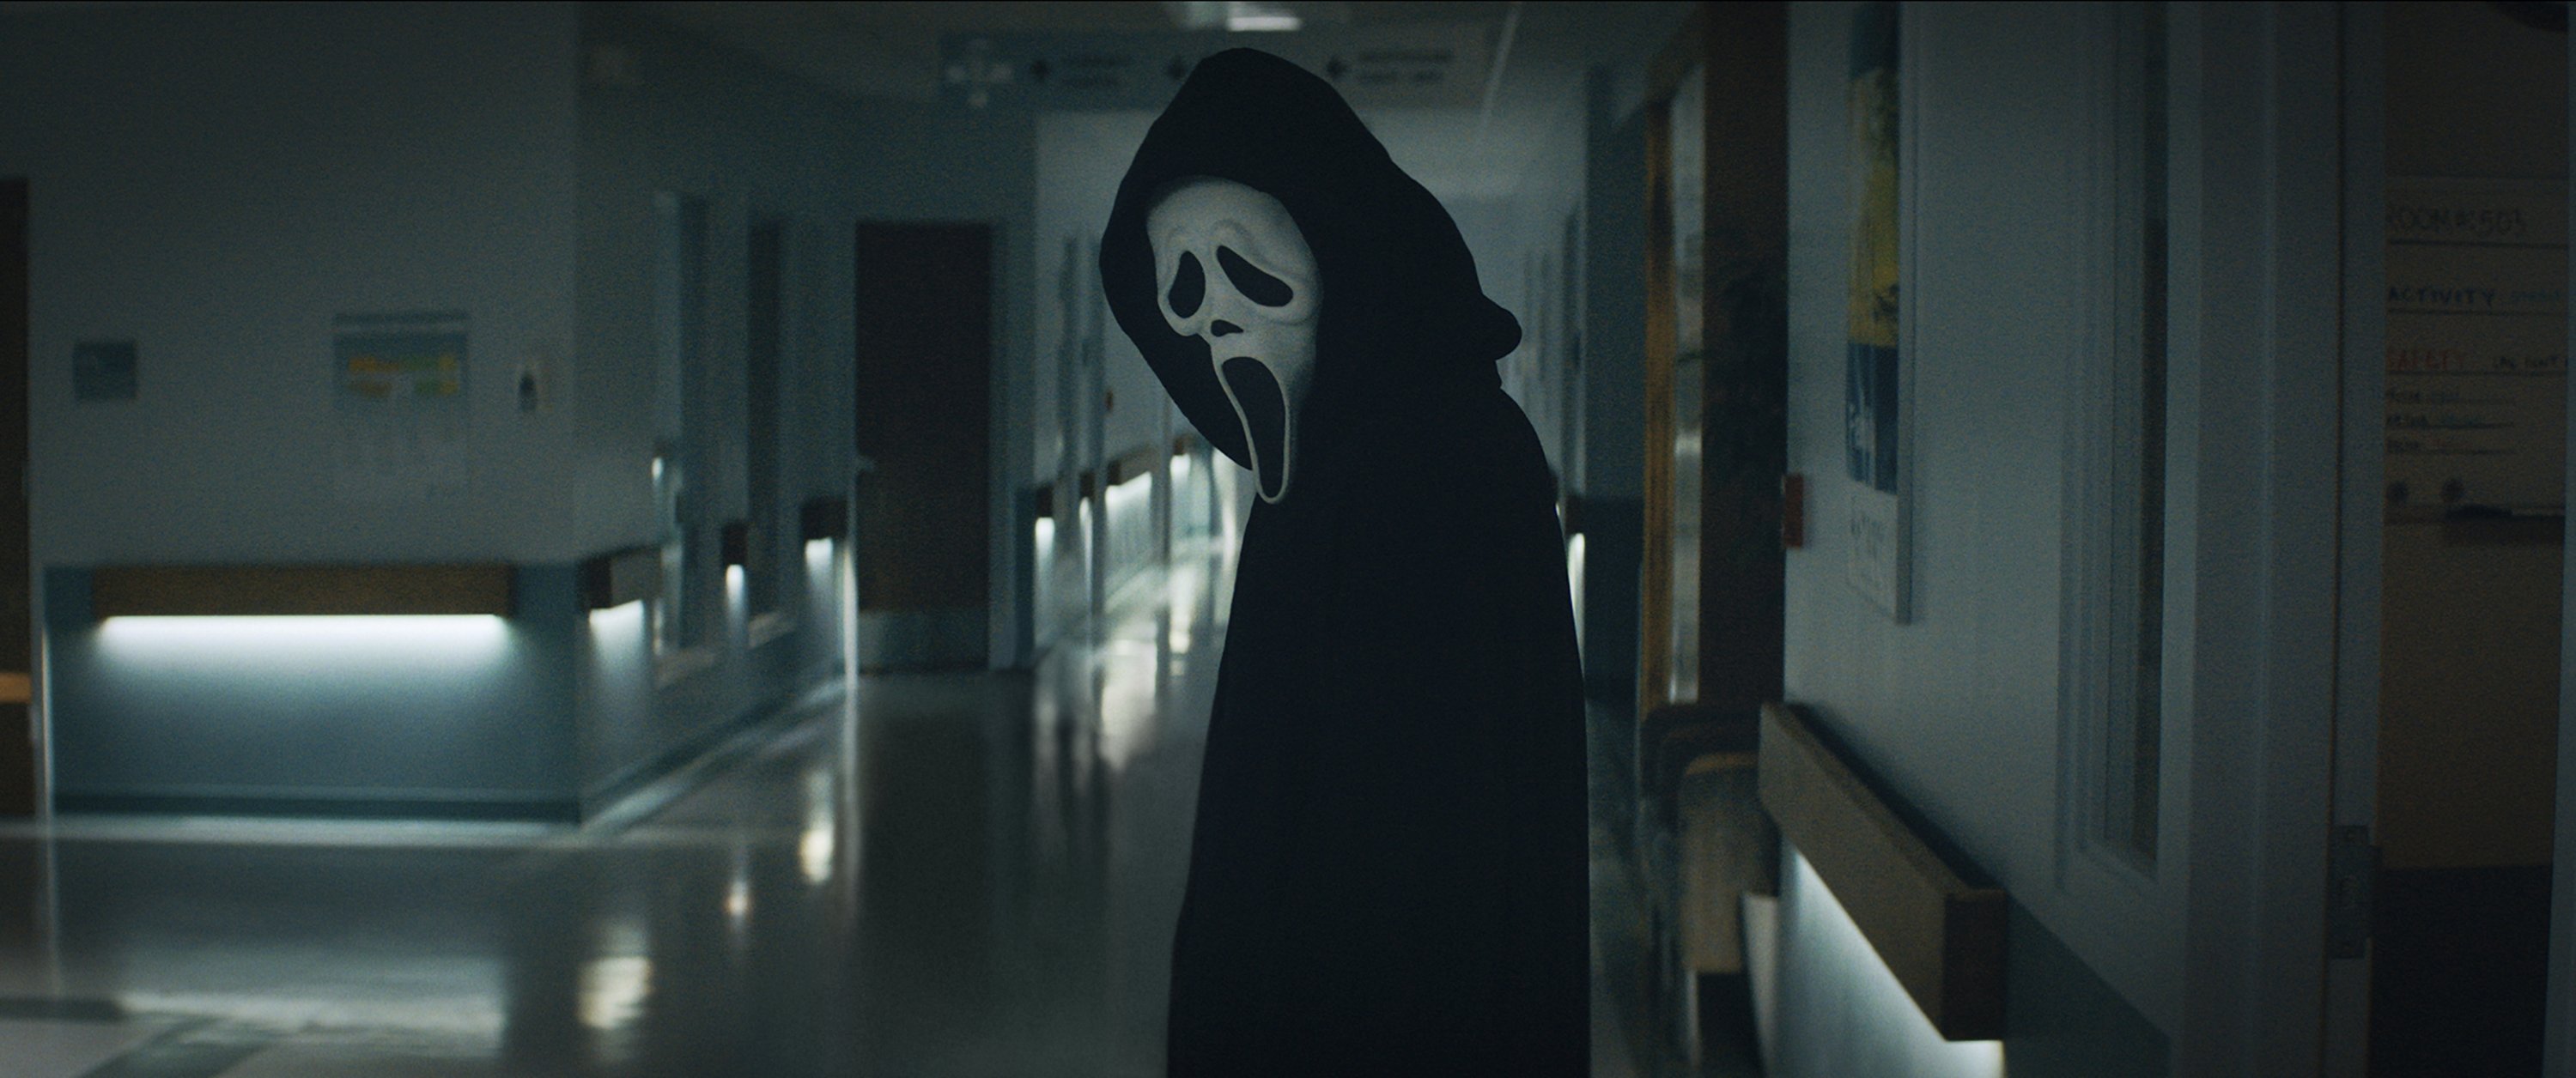 Gambar yang dirilis oleh Paramount Pictures ini menunjukkan Ghostface dalam sebuah adegan dari 